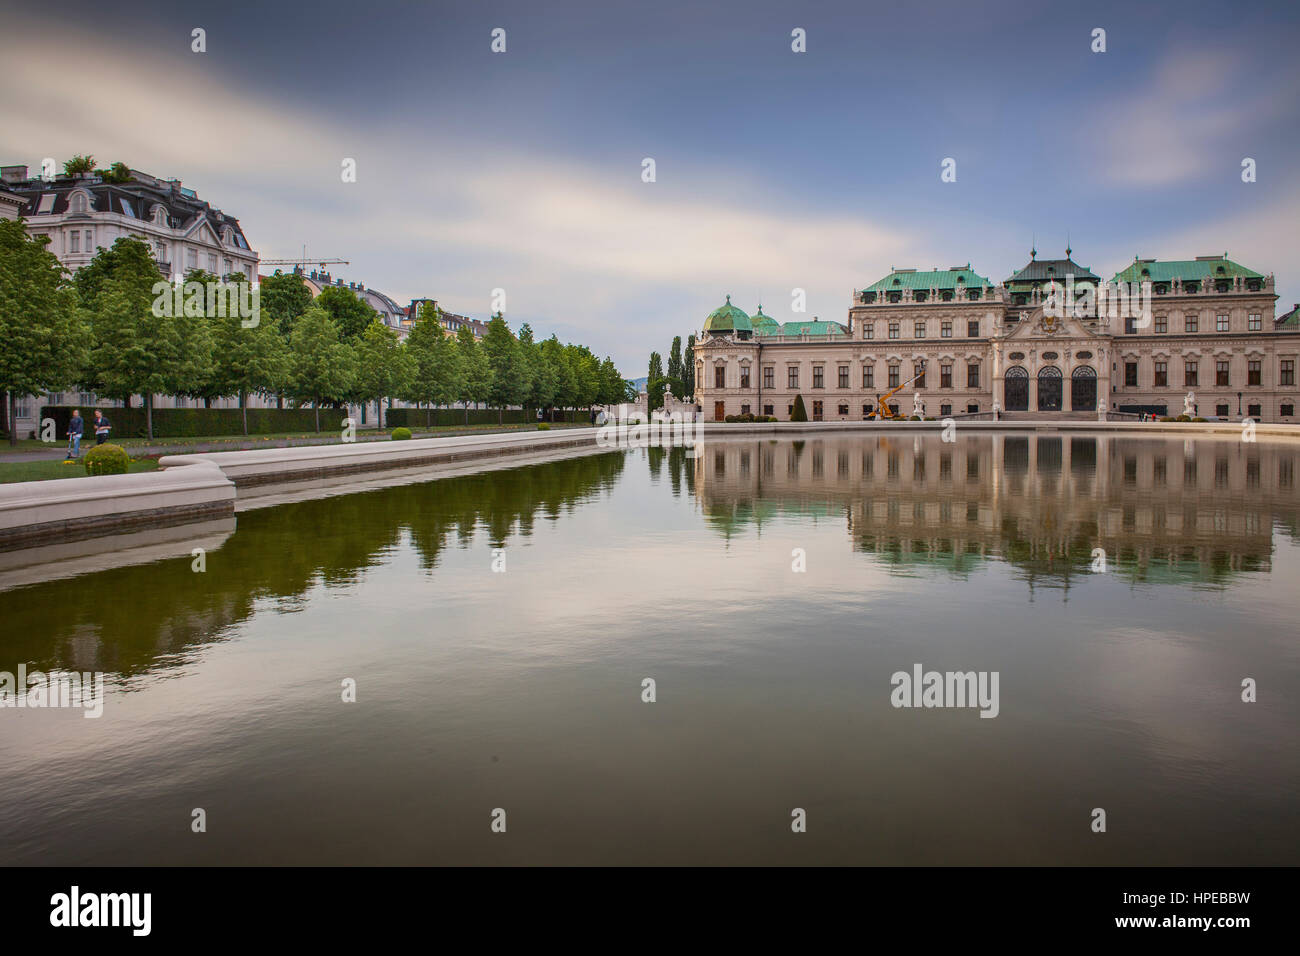 Il palazzo del Belvedere, Vienna, Austria, Europa Foto Stock